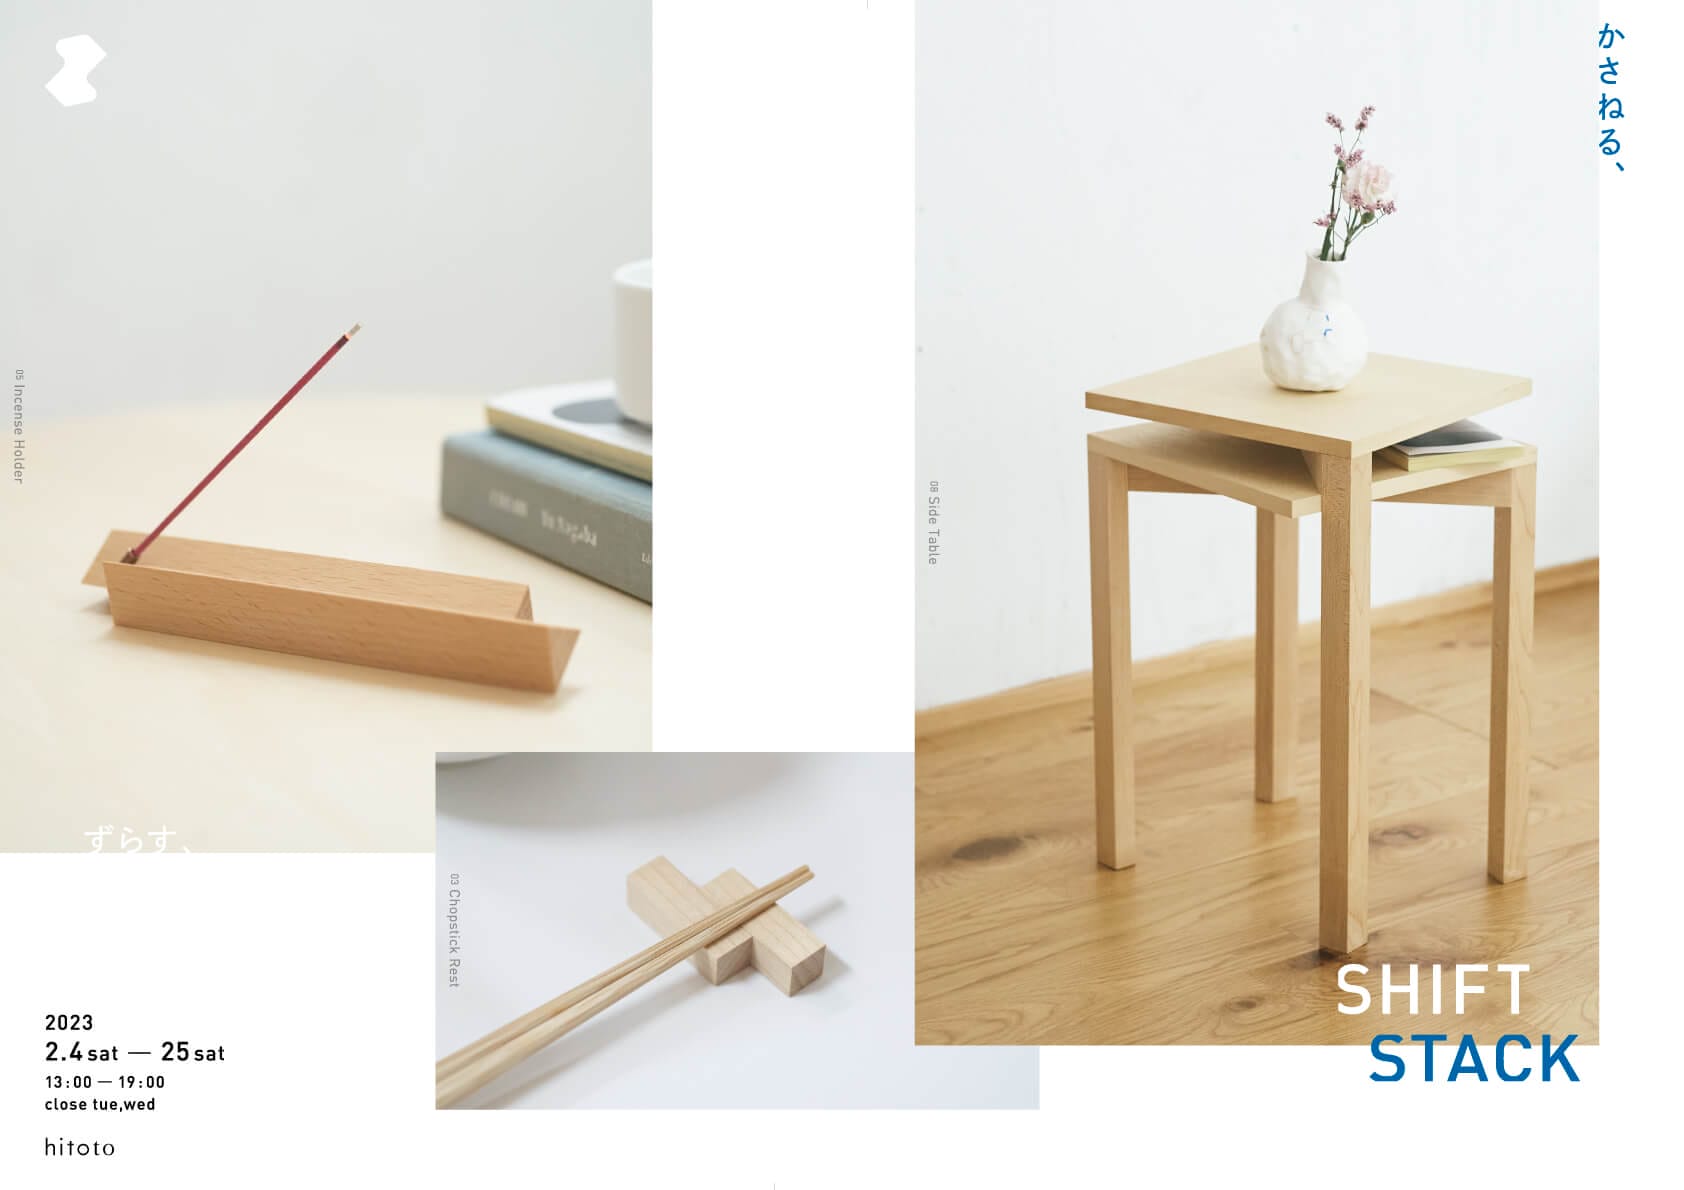 奈良市を拠点に木の家具などを手がけるsimple wood product。シリーズ「SHIFT STACK」の新作9点を中心に展示・販売を行う展覧会が、2/25（土）までhitotoにて開催中。